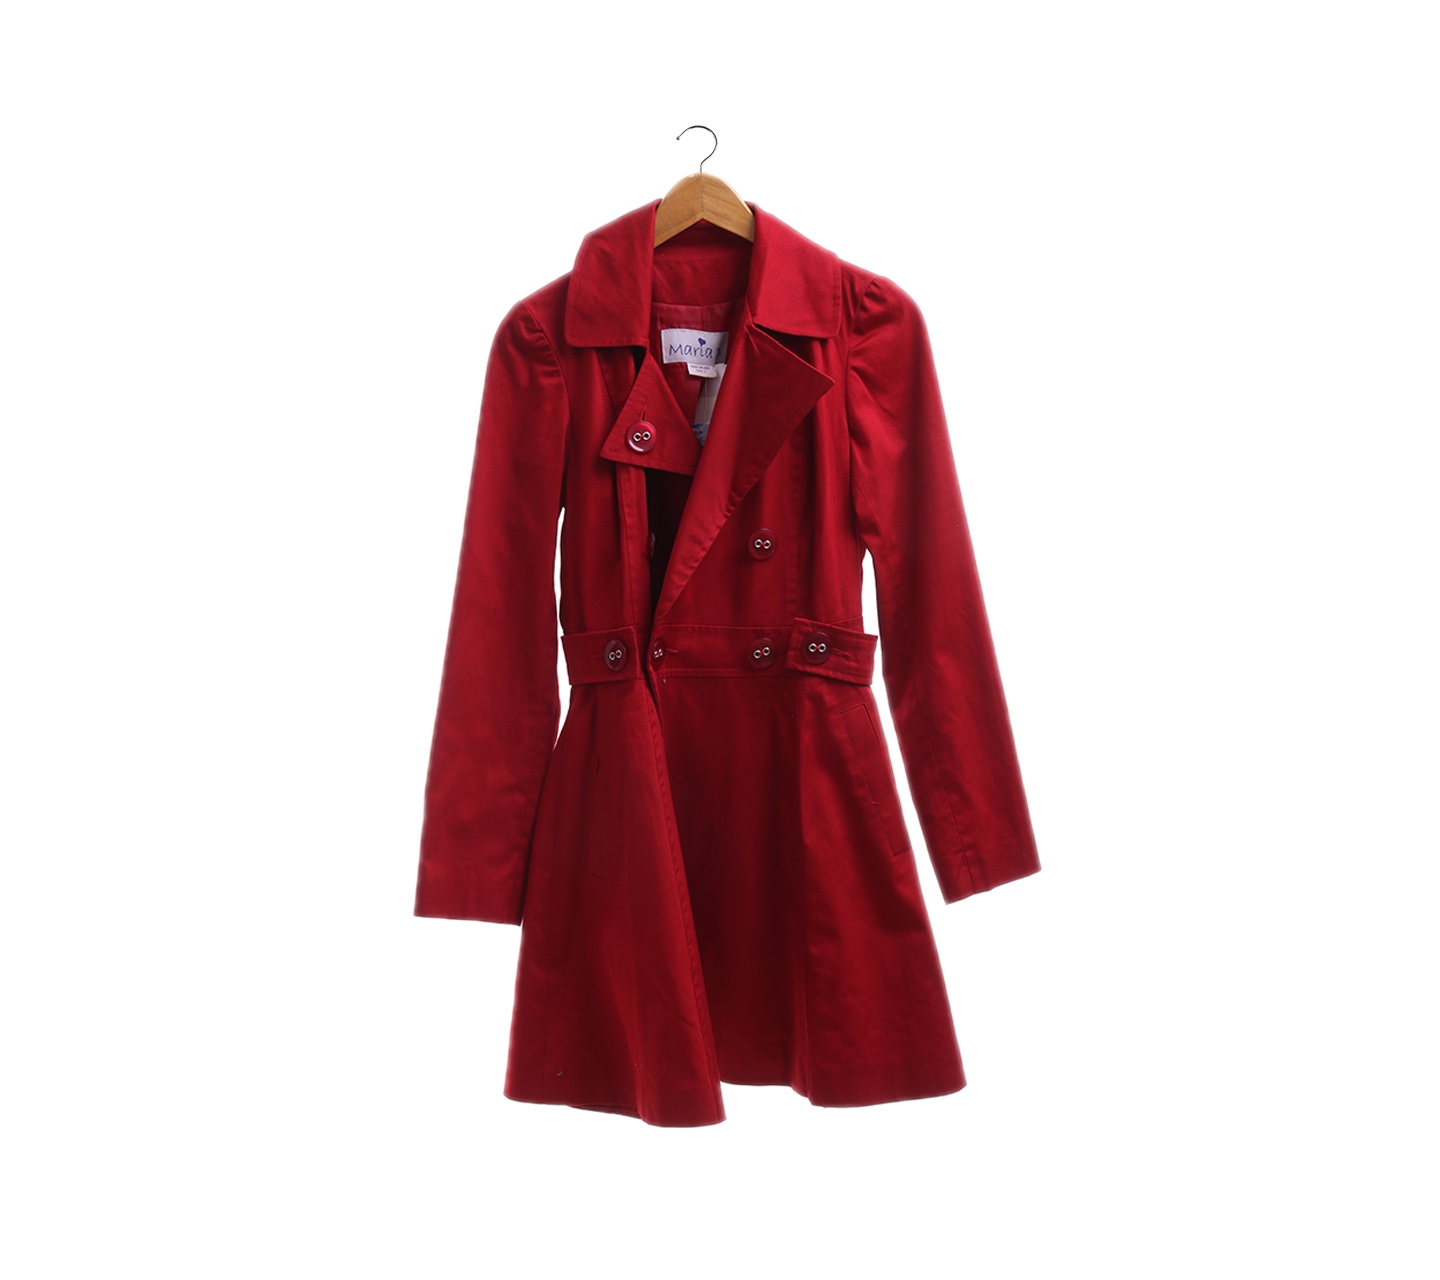 Marla D red coat